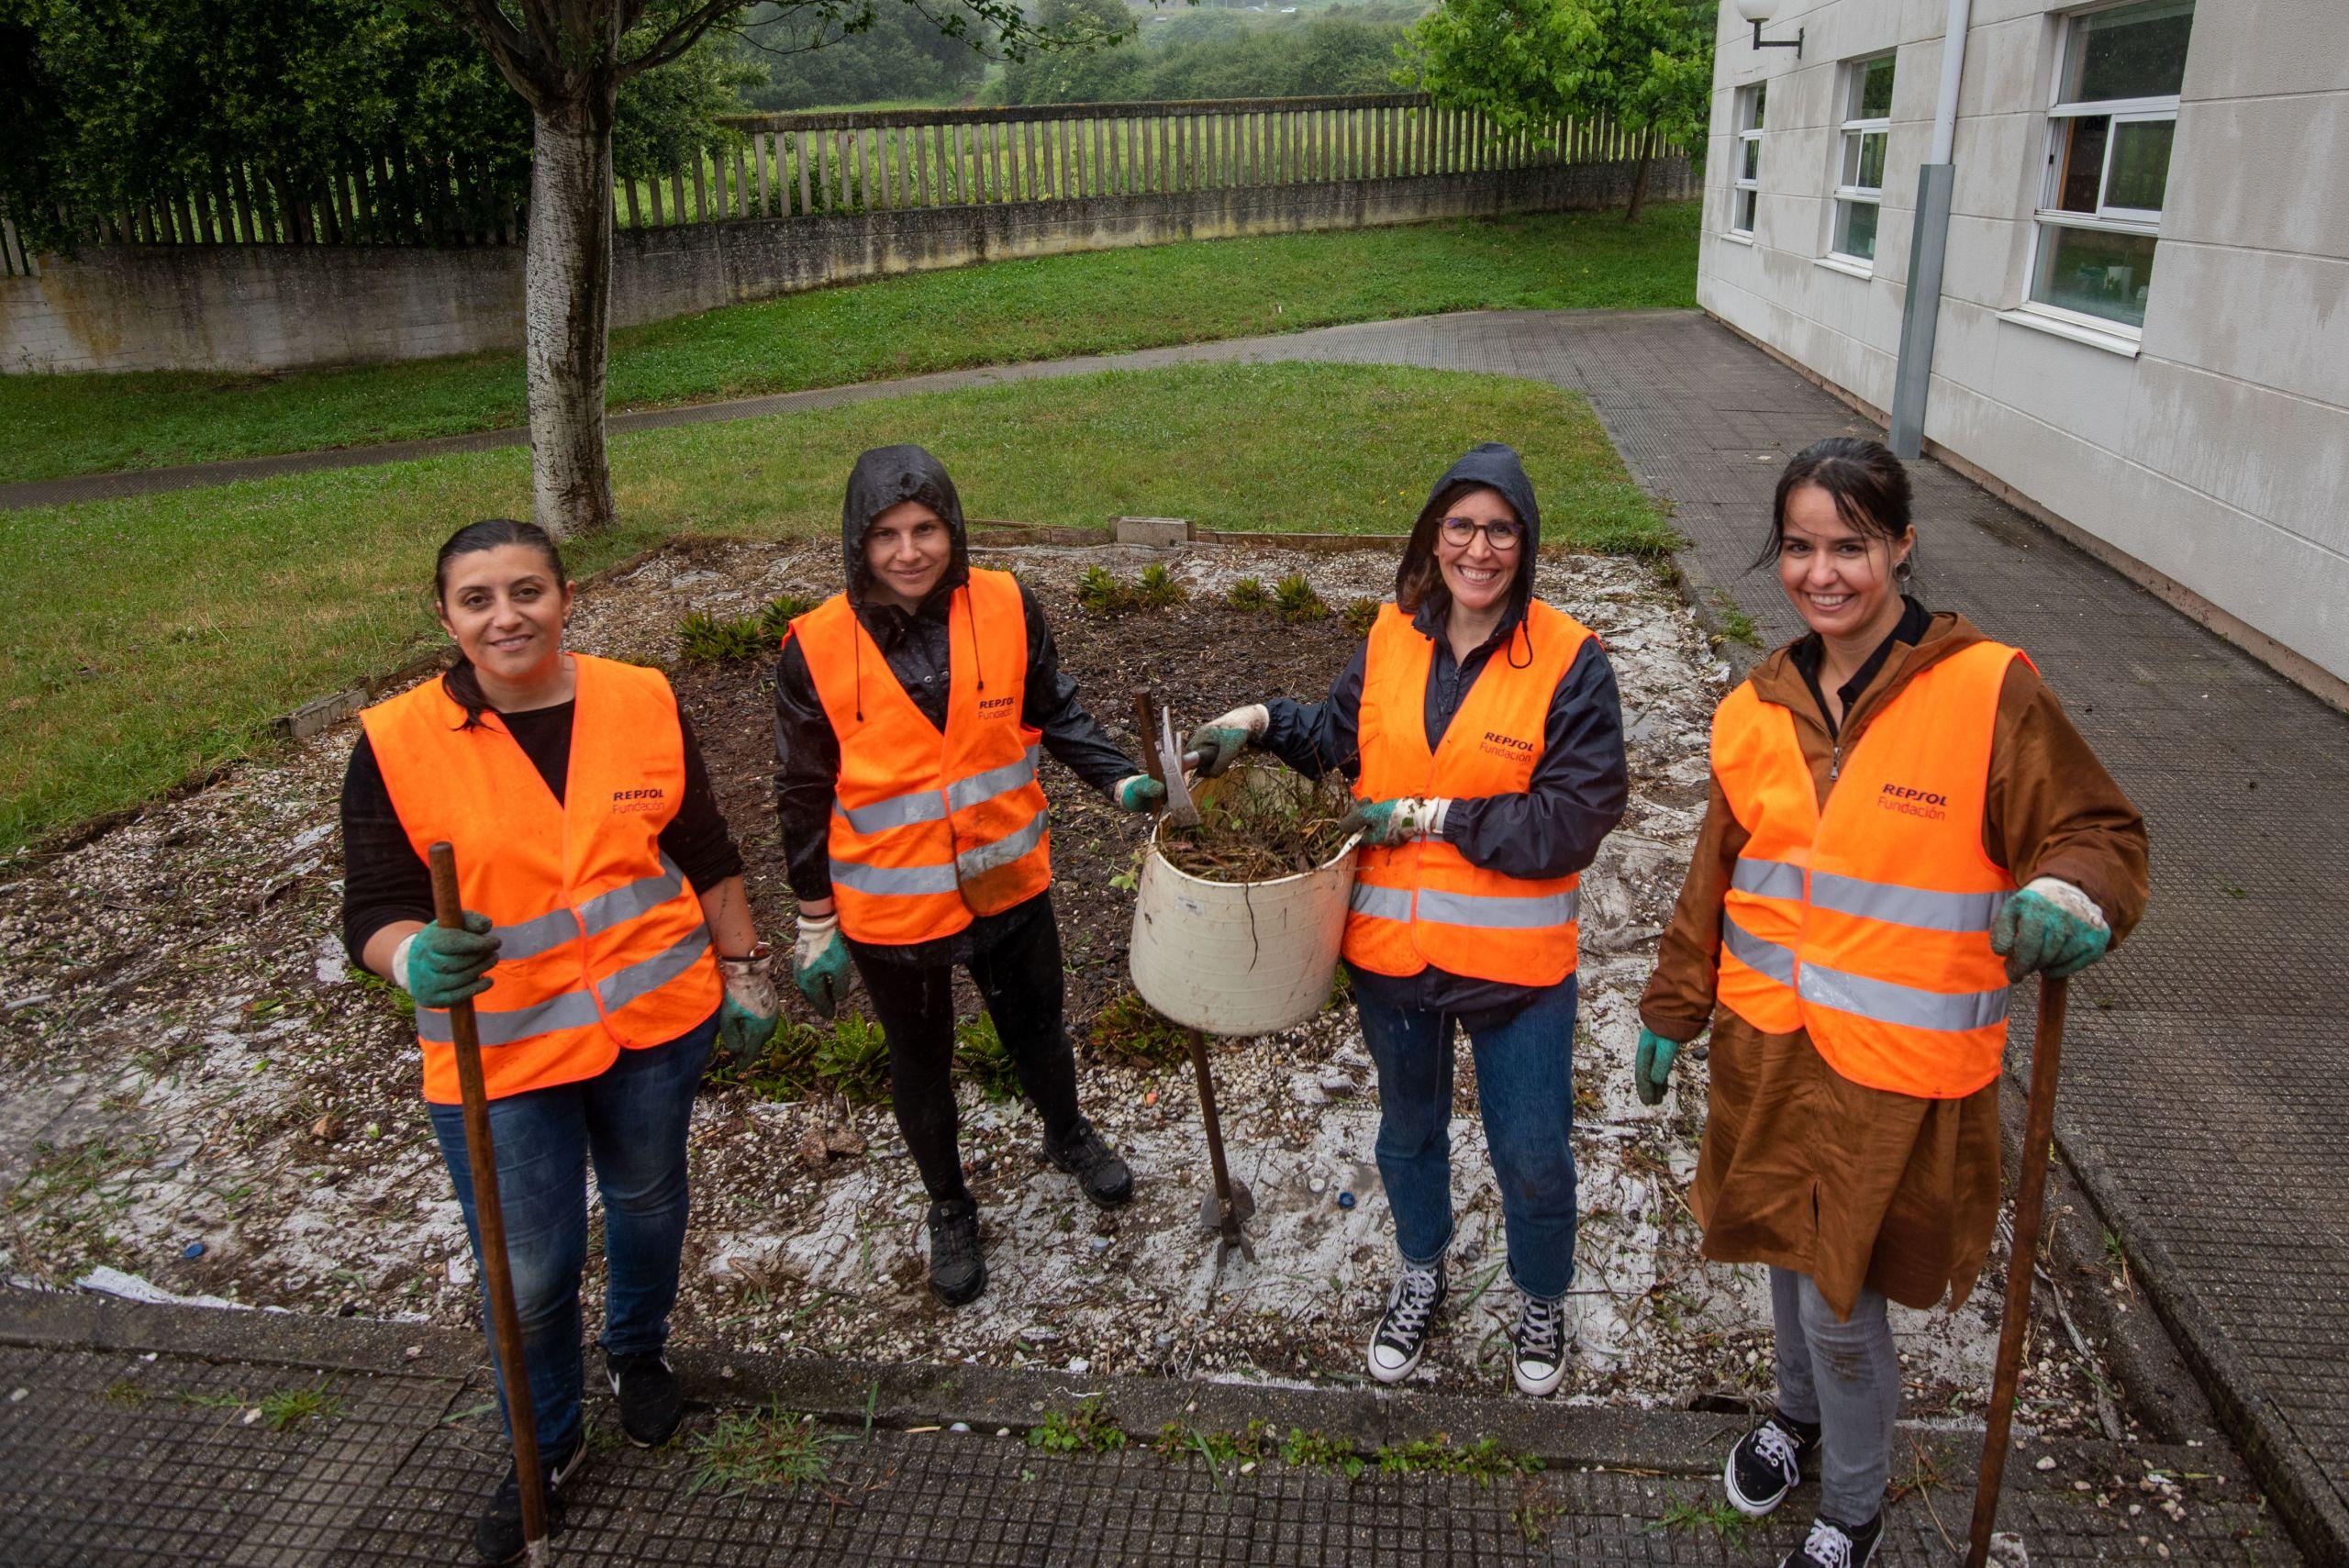 Luz Rodríguez, Iría Garea, Ana Tordable y Marta Calvo, voluntarias de la refinería de Repsol en A Coruña colaborando con el centro en la realización de actuaciones de mantenimiento y jardinería (Fuente: Repsol)